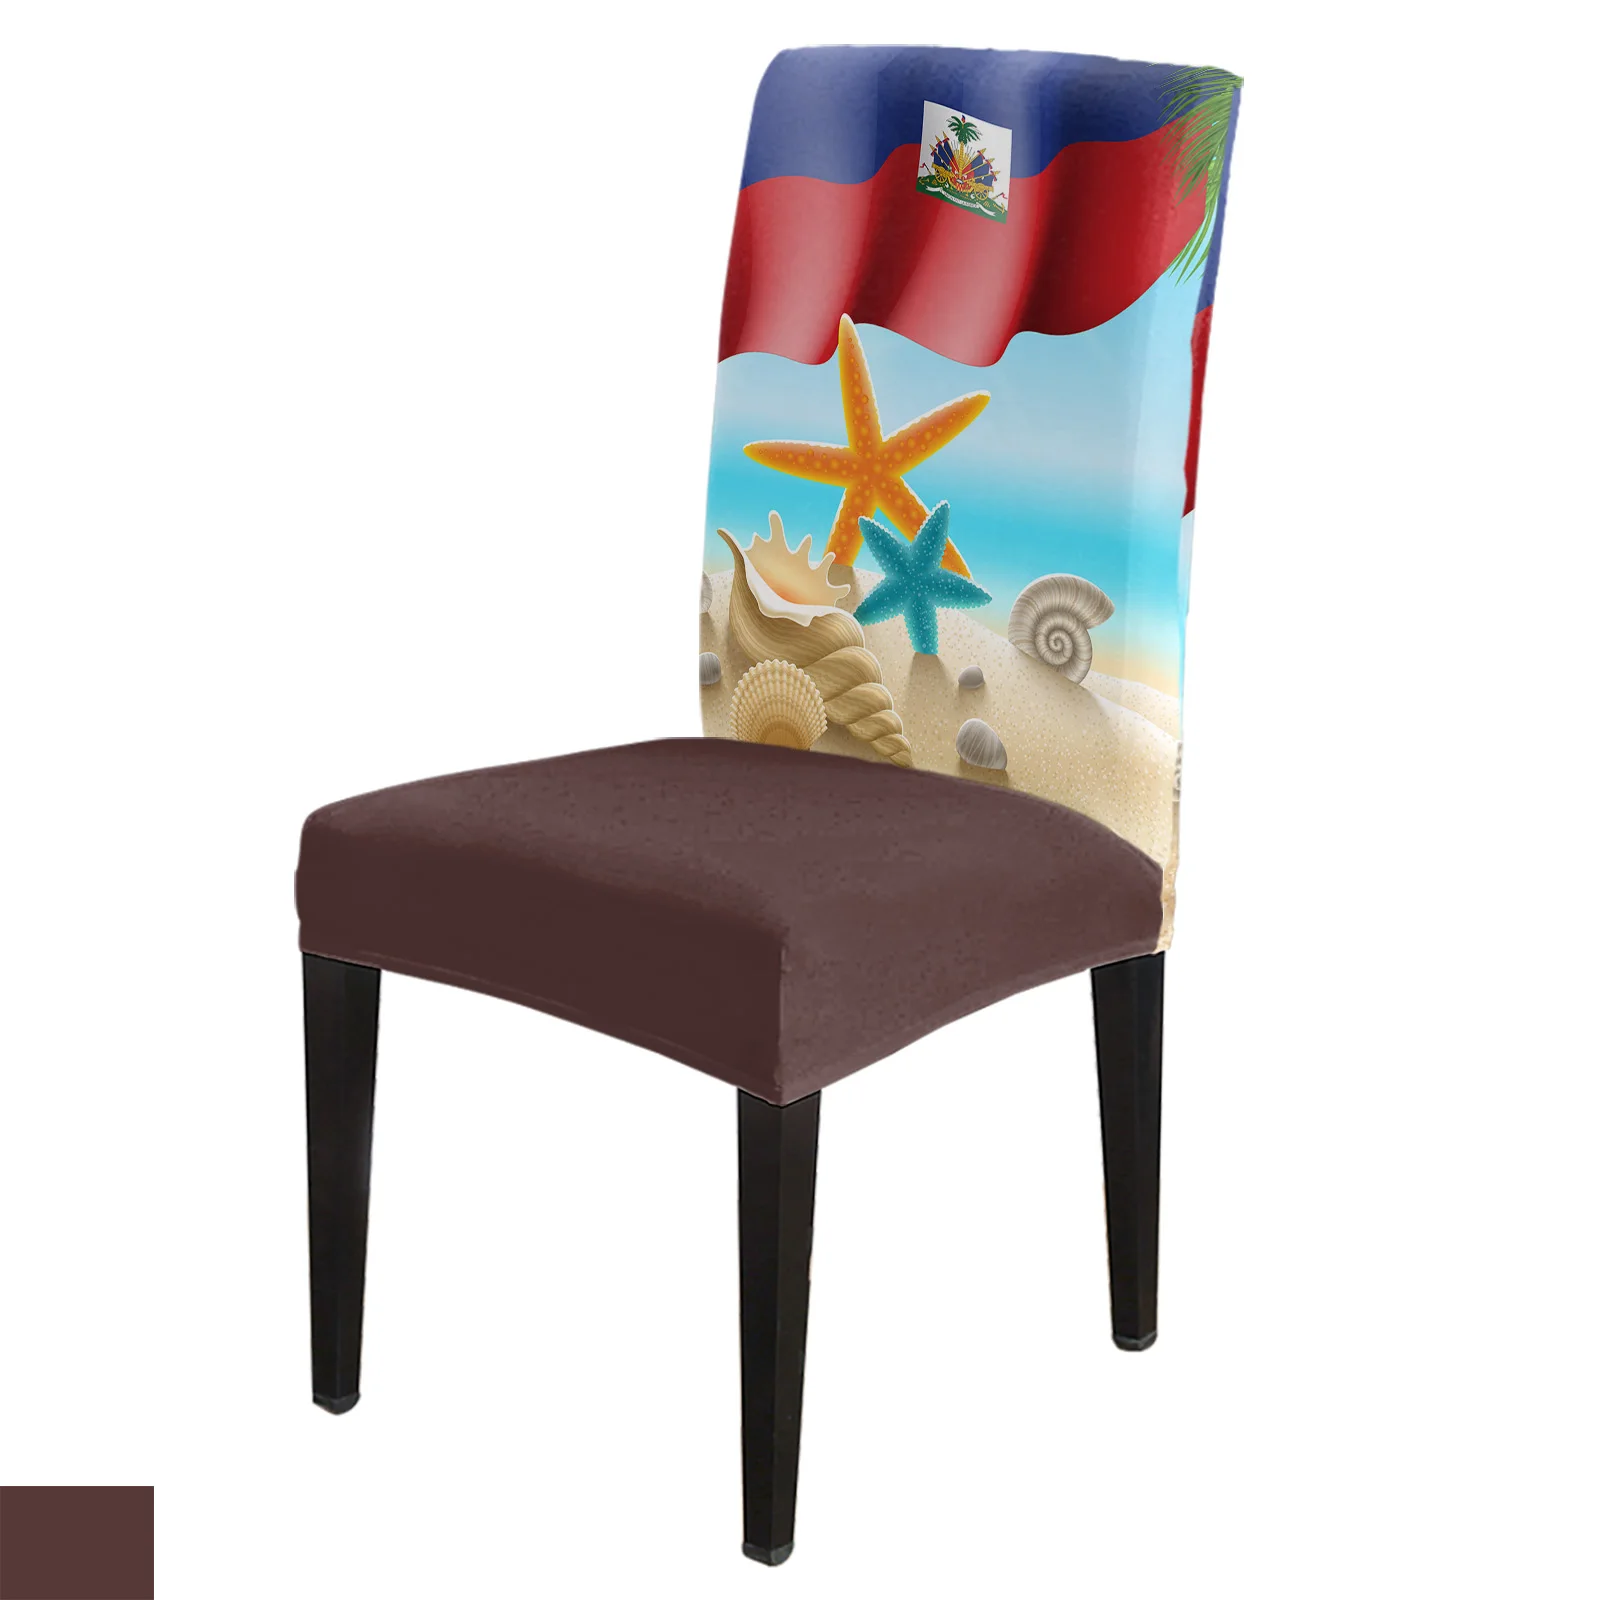 

Чехол на стул с изображением флага Гаити, пляжа, морской звезды и ракушек, эластичная ткань для столовой, чехол для кресла спандекс, для офисного стула